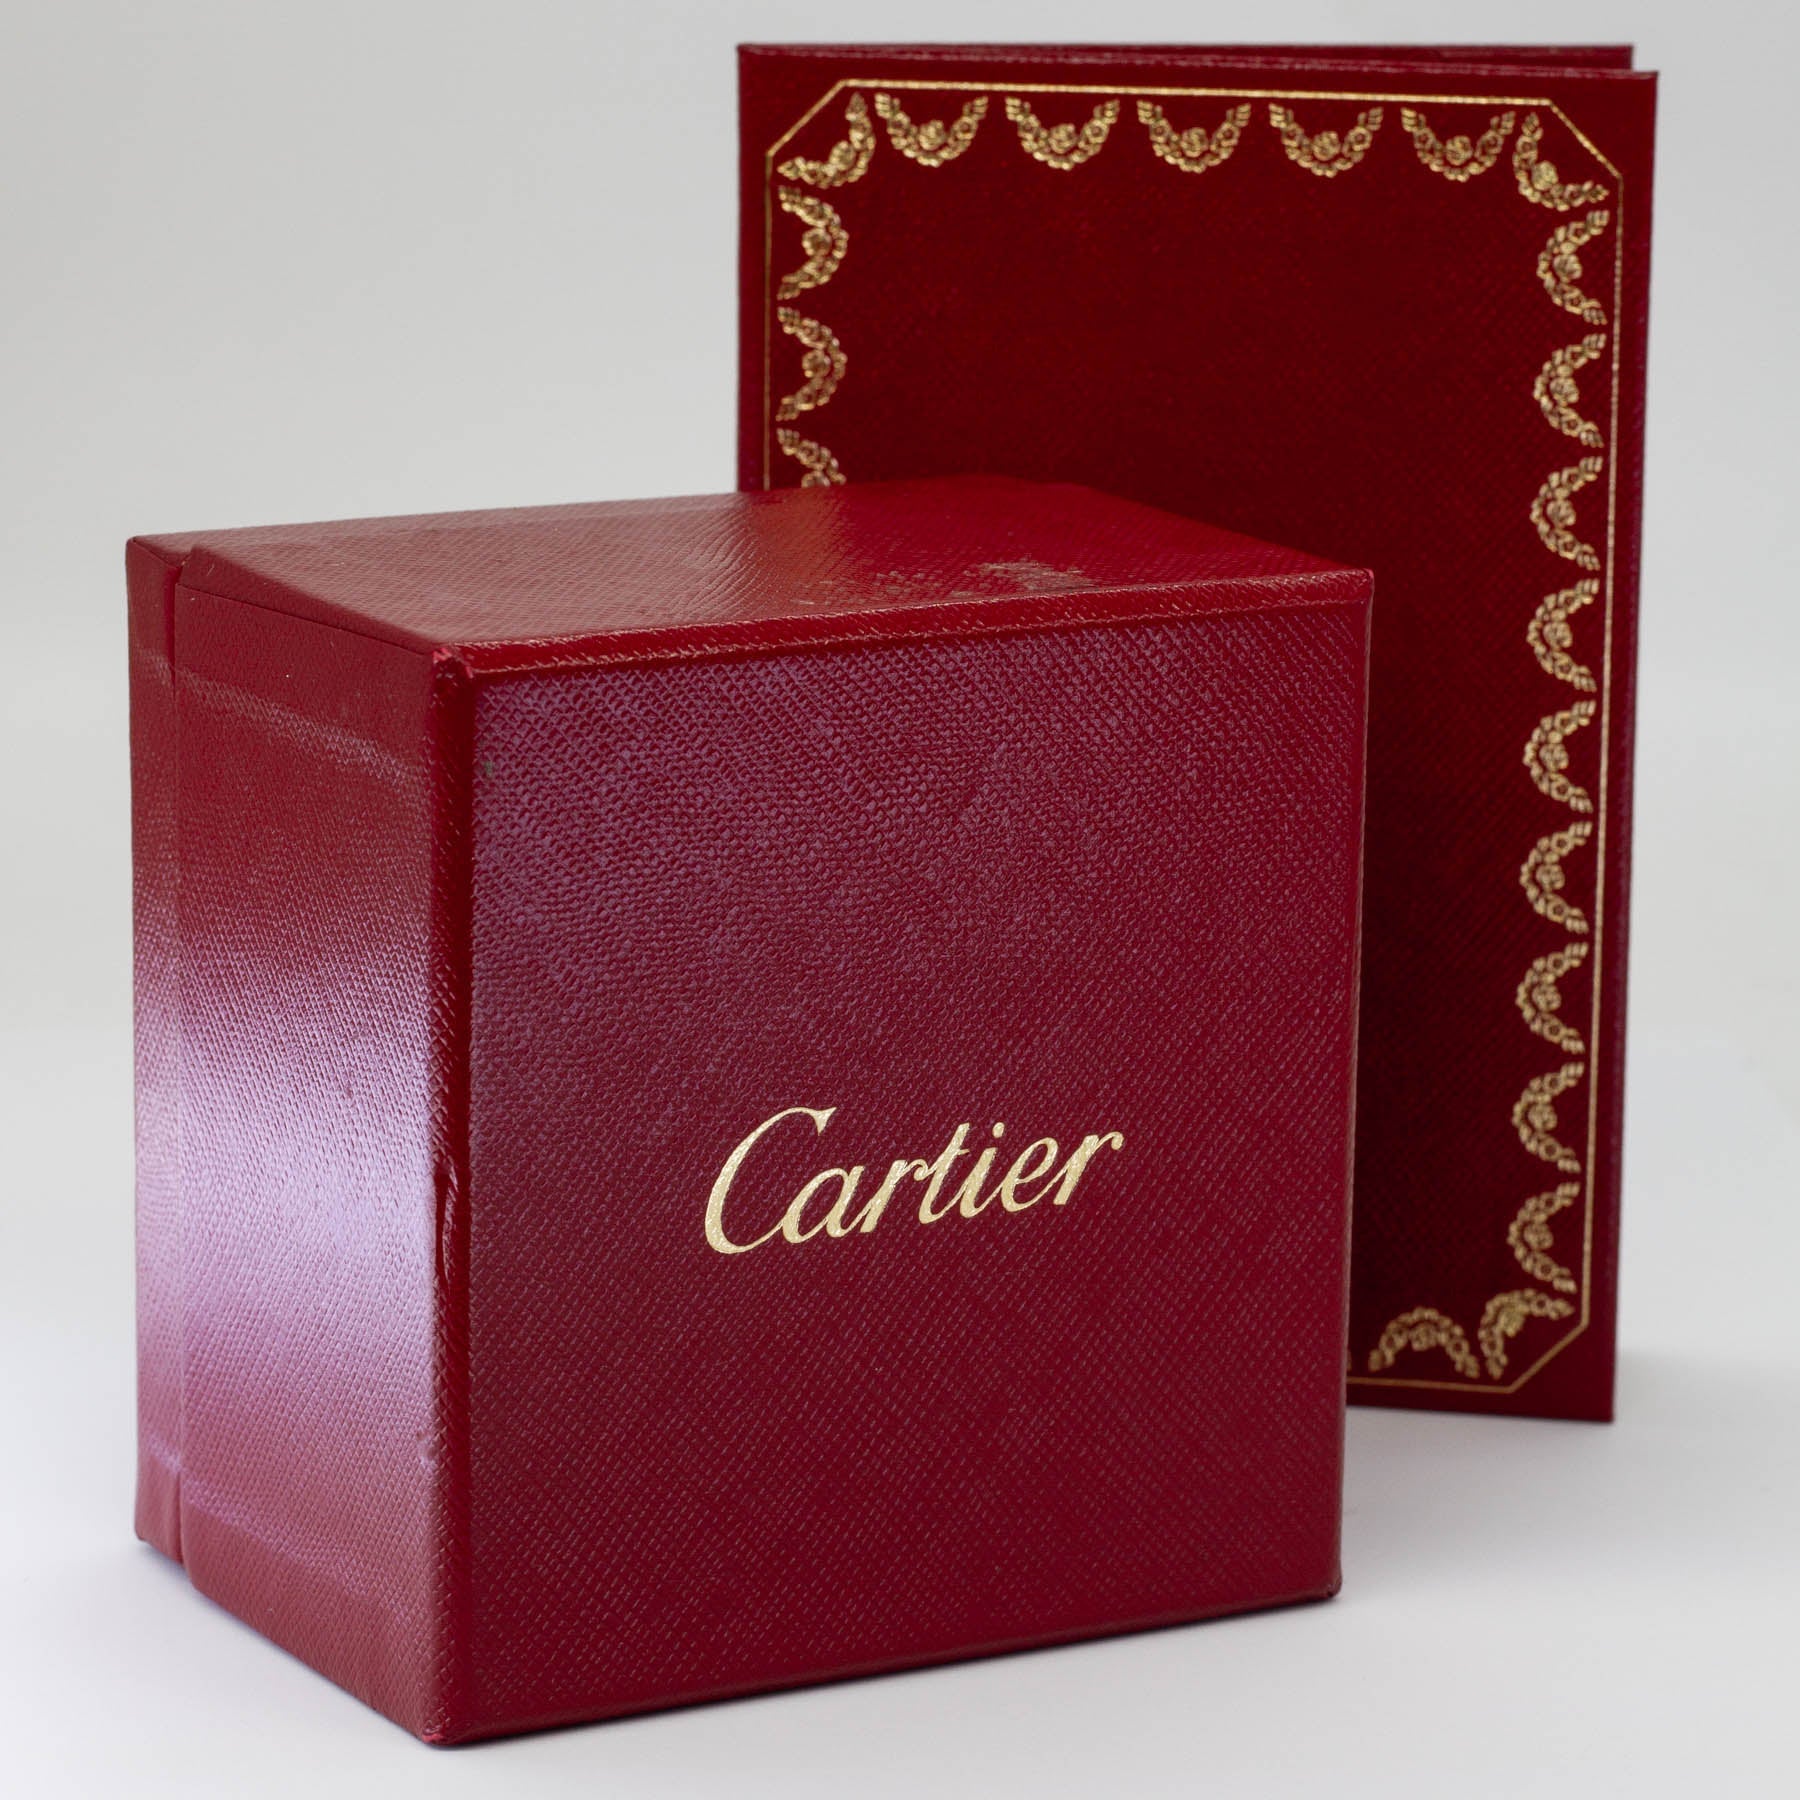 'Cartier' Classic Trinty Ring | Sz 8 | Cartier Sz 55 - 100 Ways